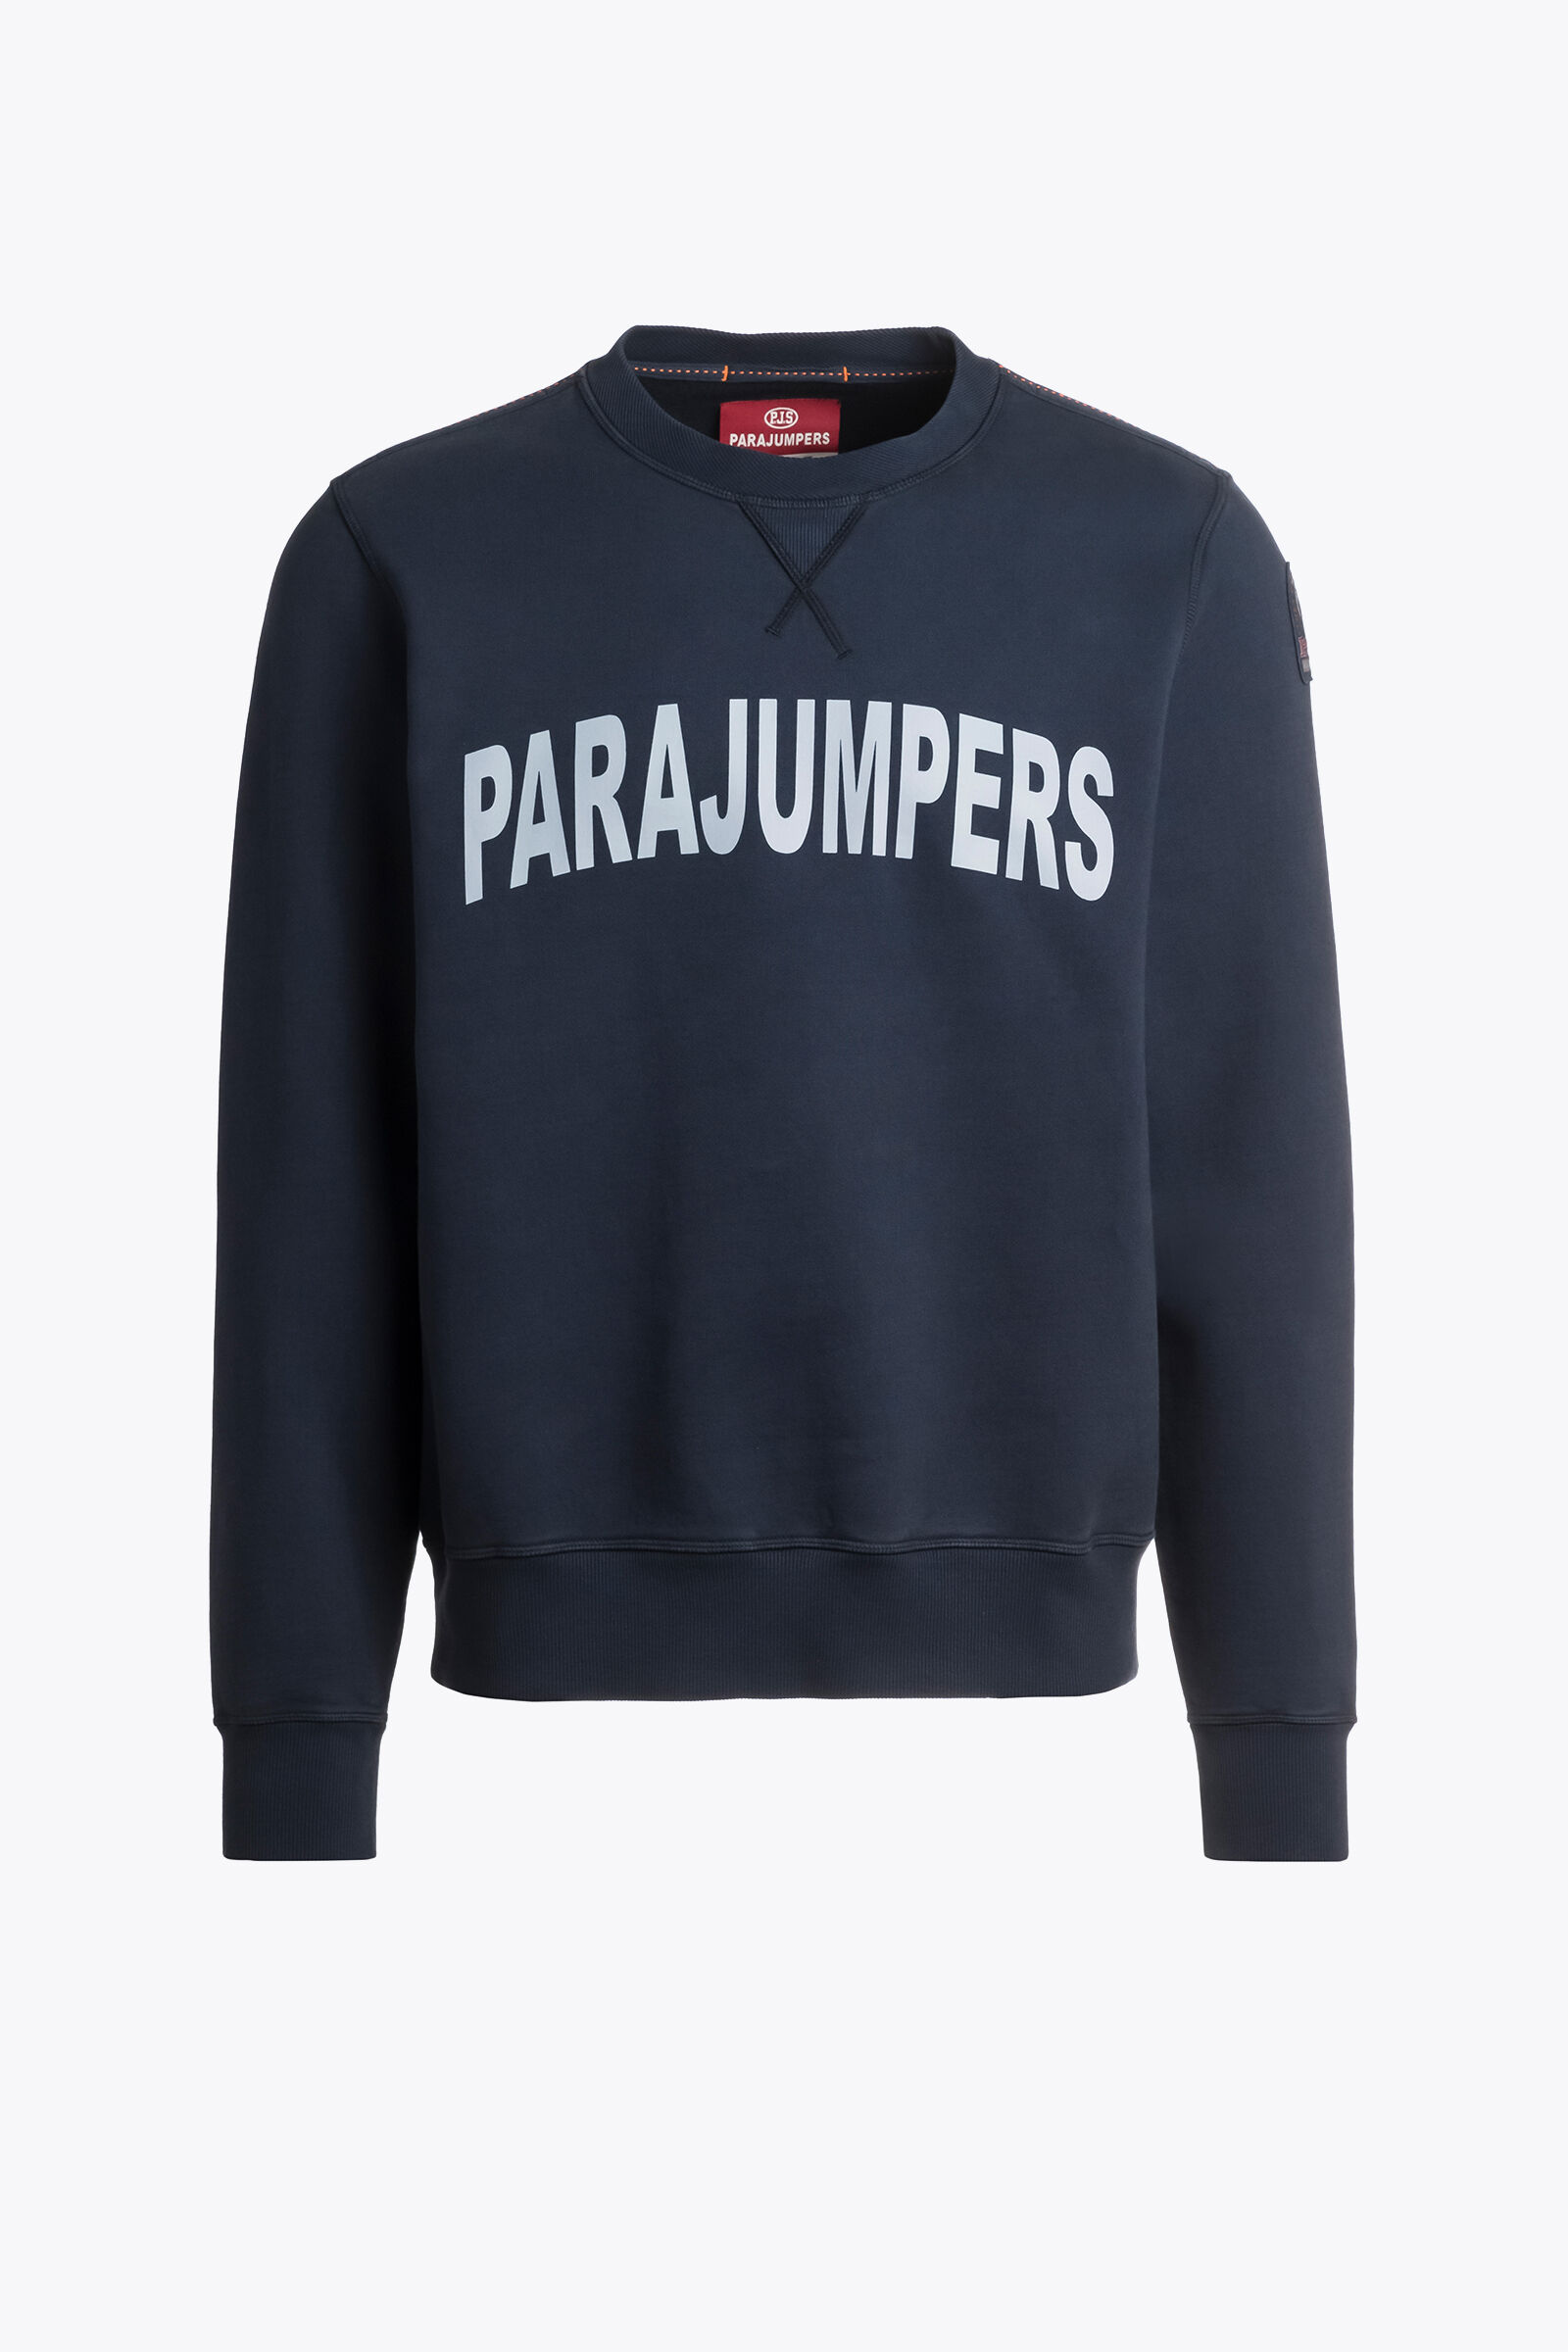 Men's Fleece Hoodies and Turtleneck Sweaters | Parajumpers®PJS